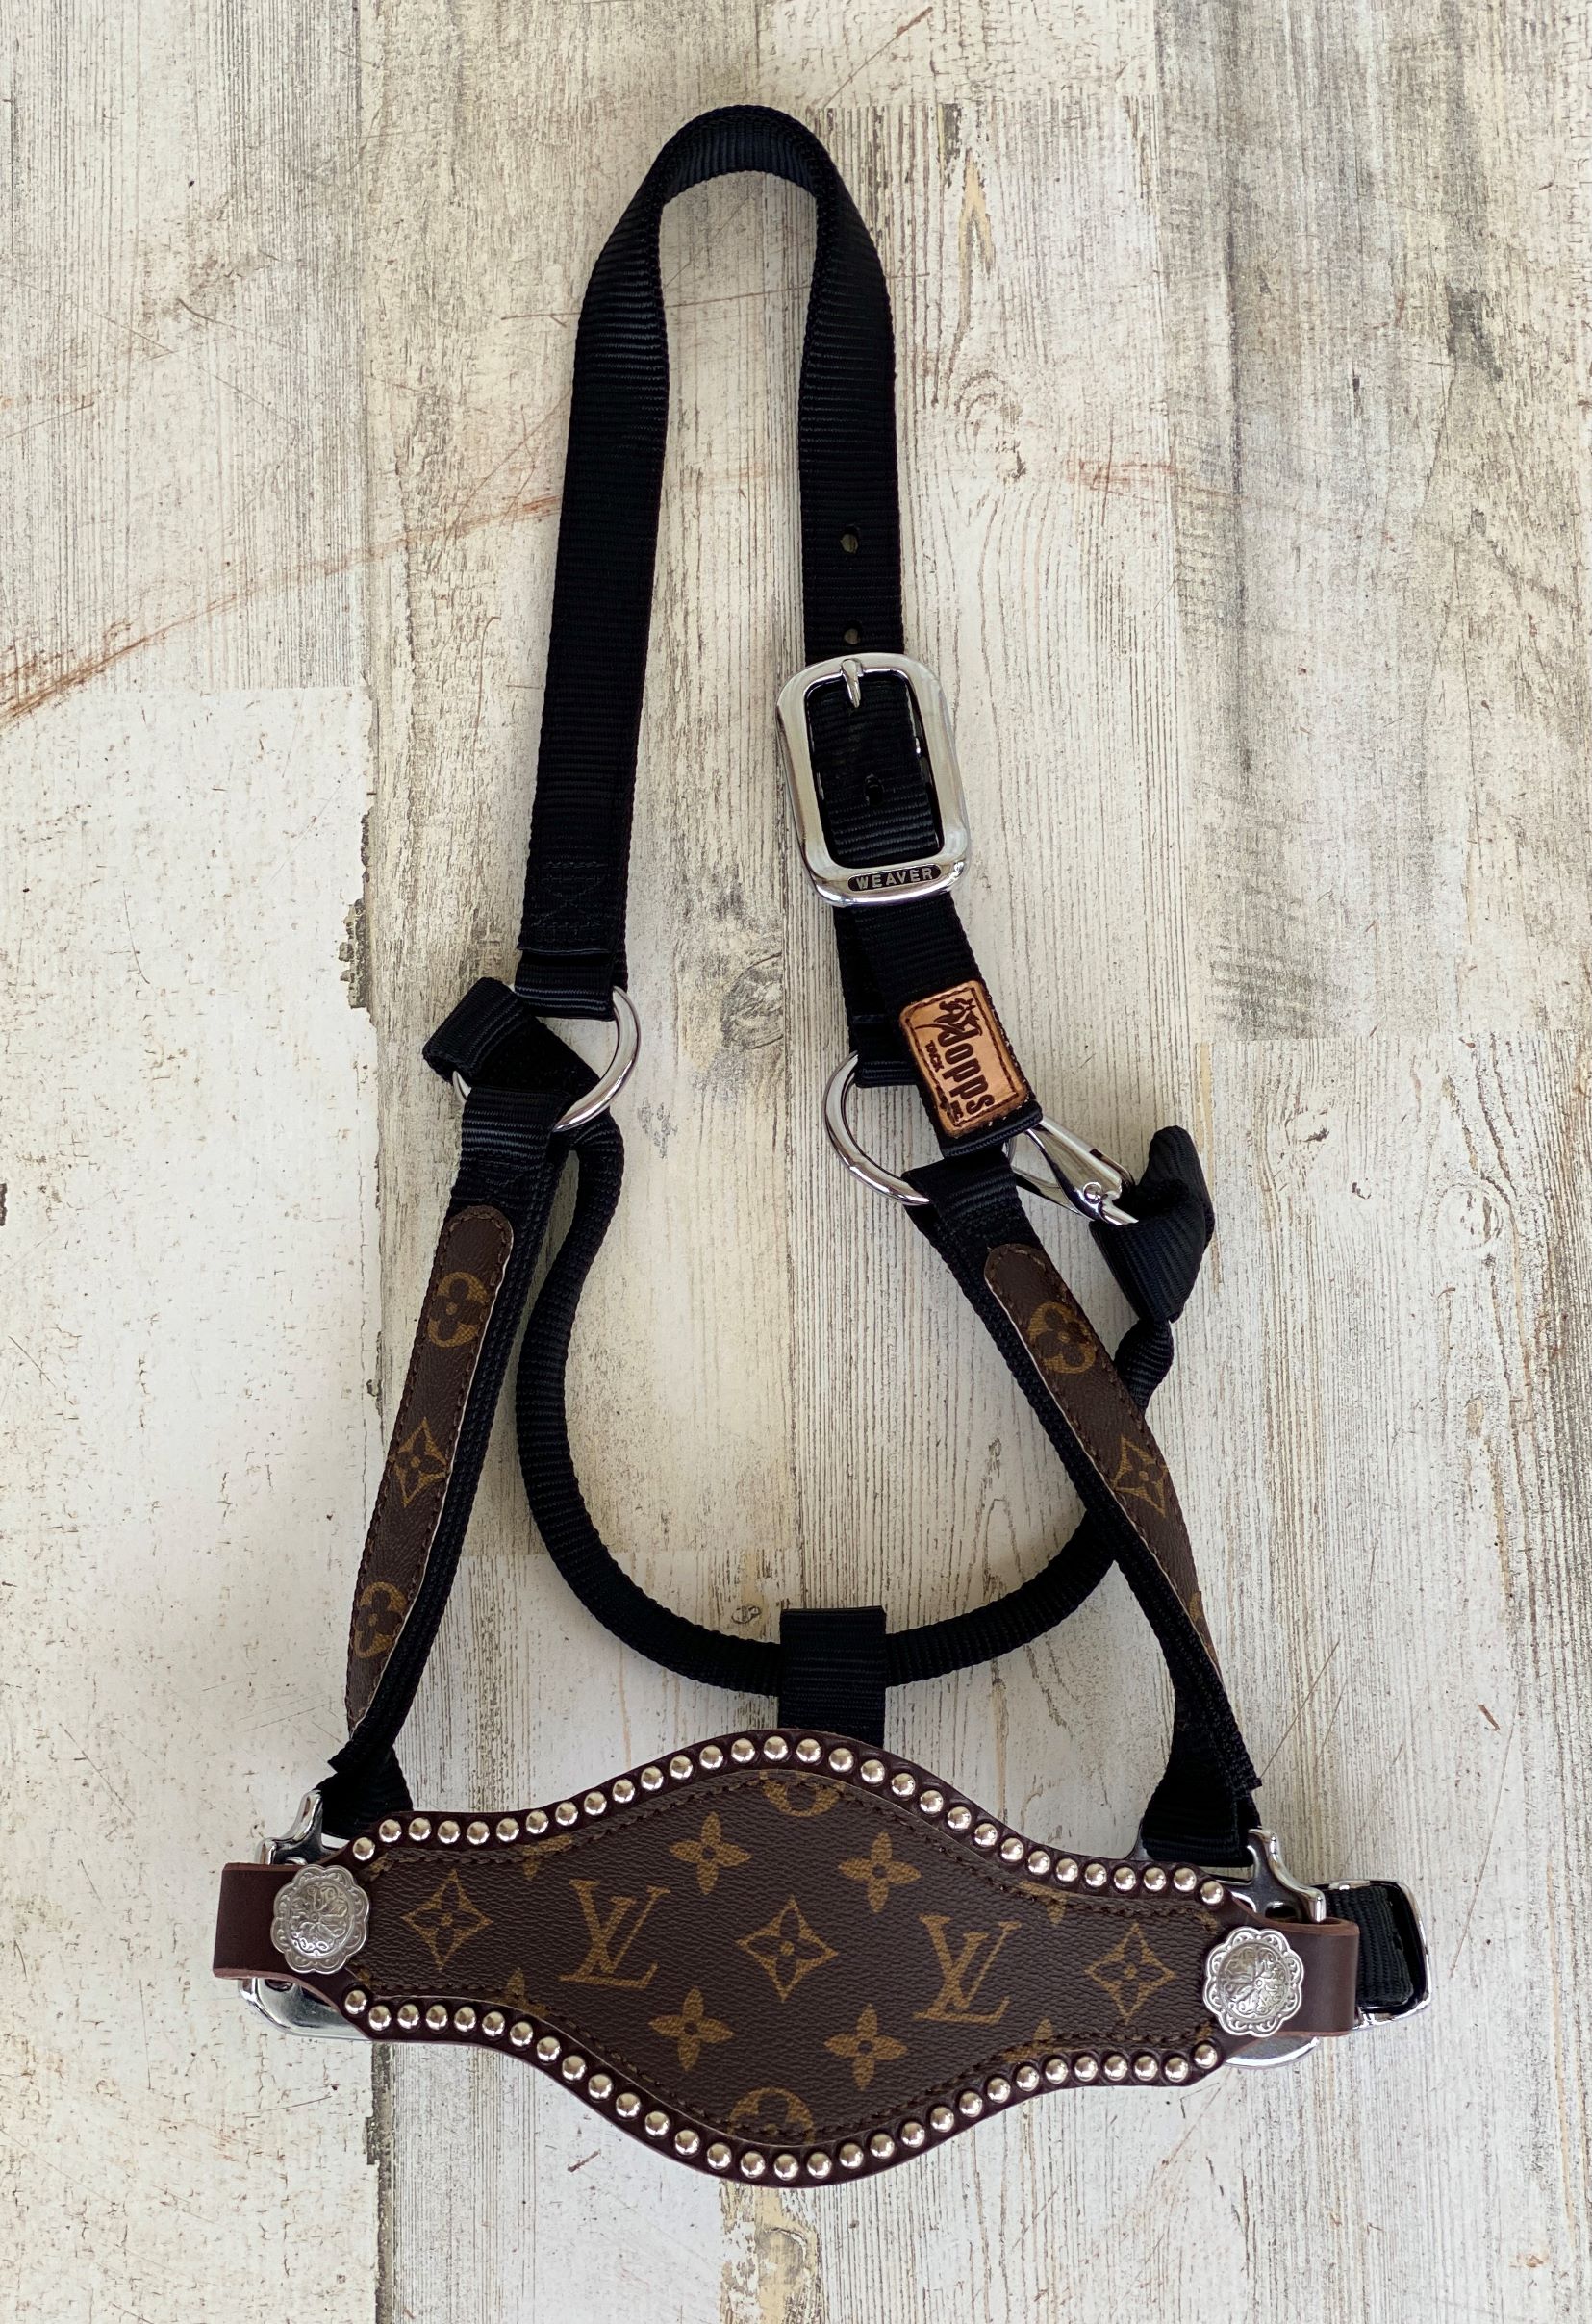 Louis Vuitton, Accessories, Louis Vuitton Mens Leather Belt Size 400